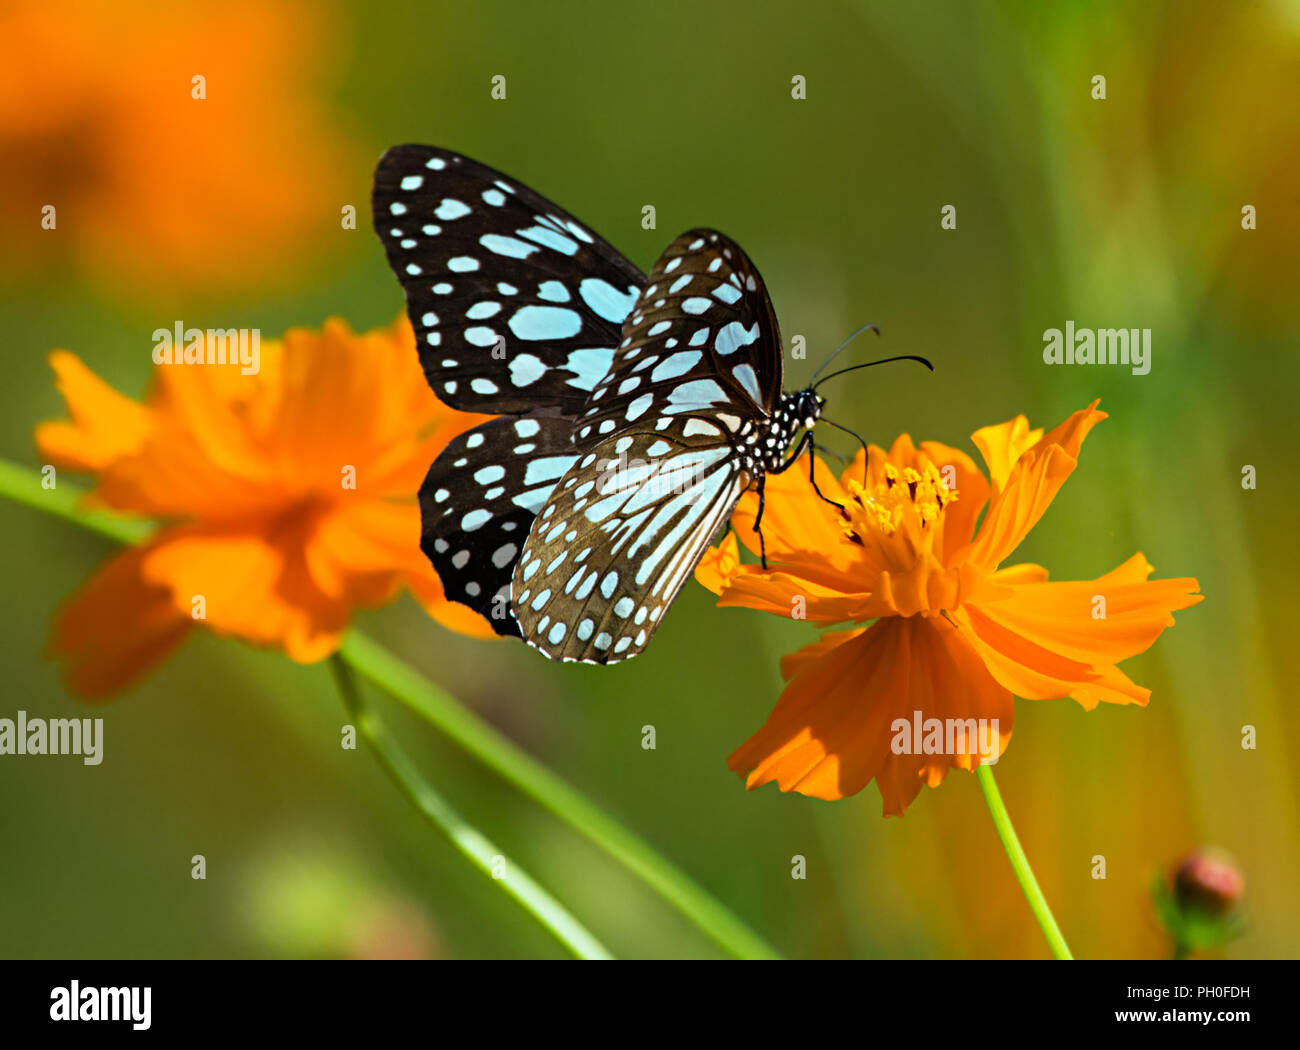 Tigre azul o mariposas Danaid limniace Tirumala en un cosmos naranja flor. Foto de stock